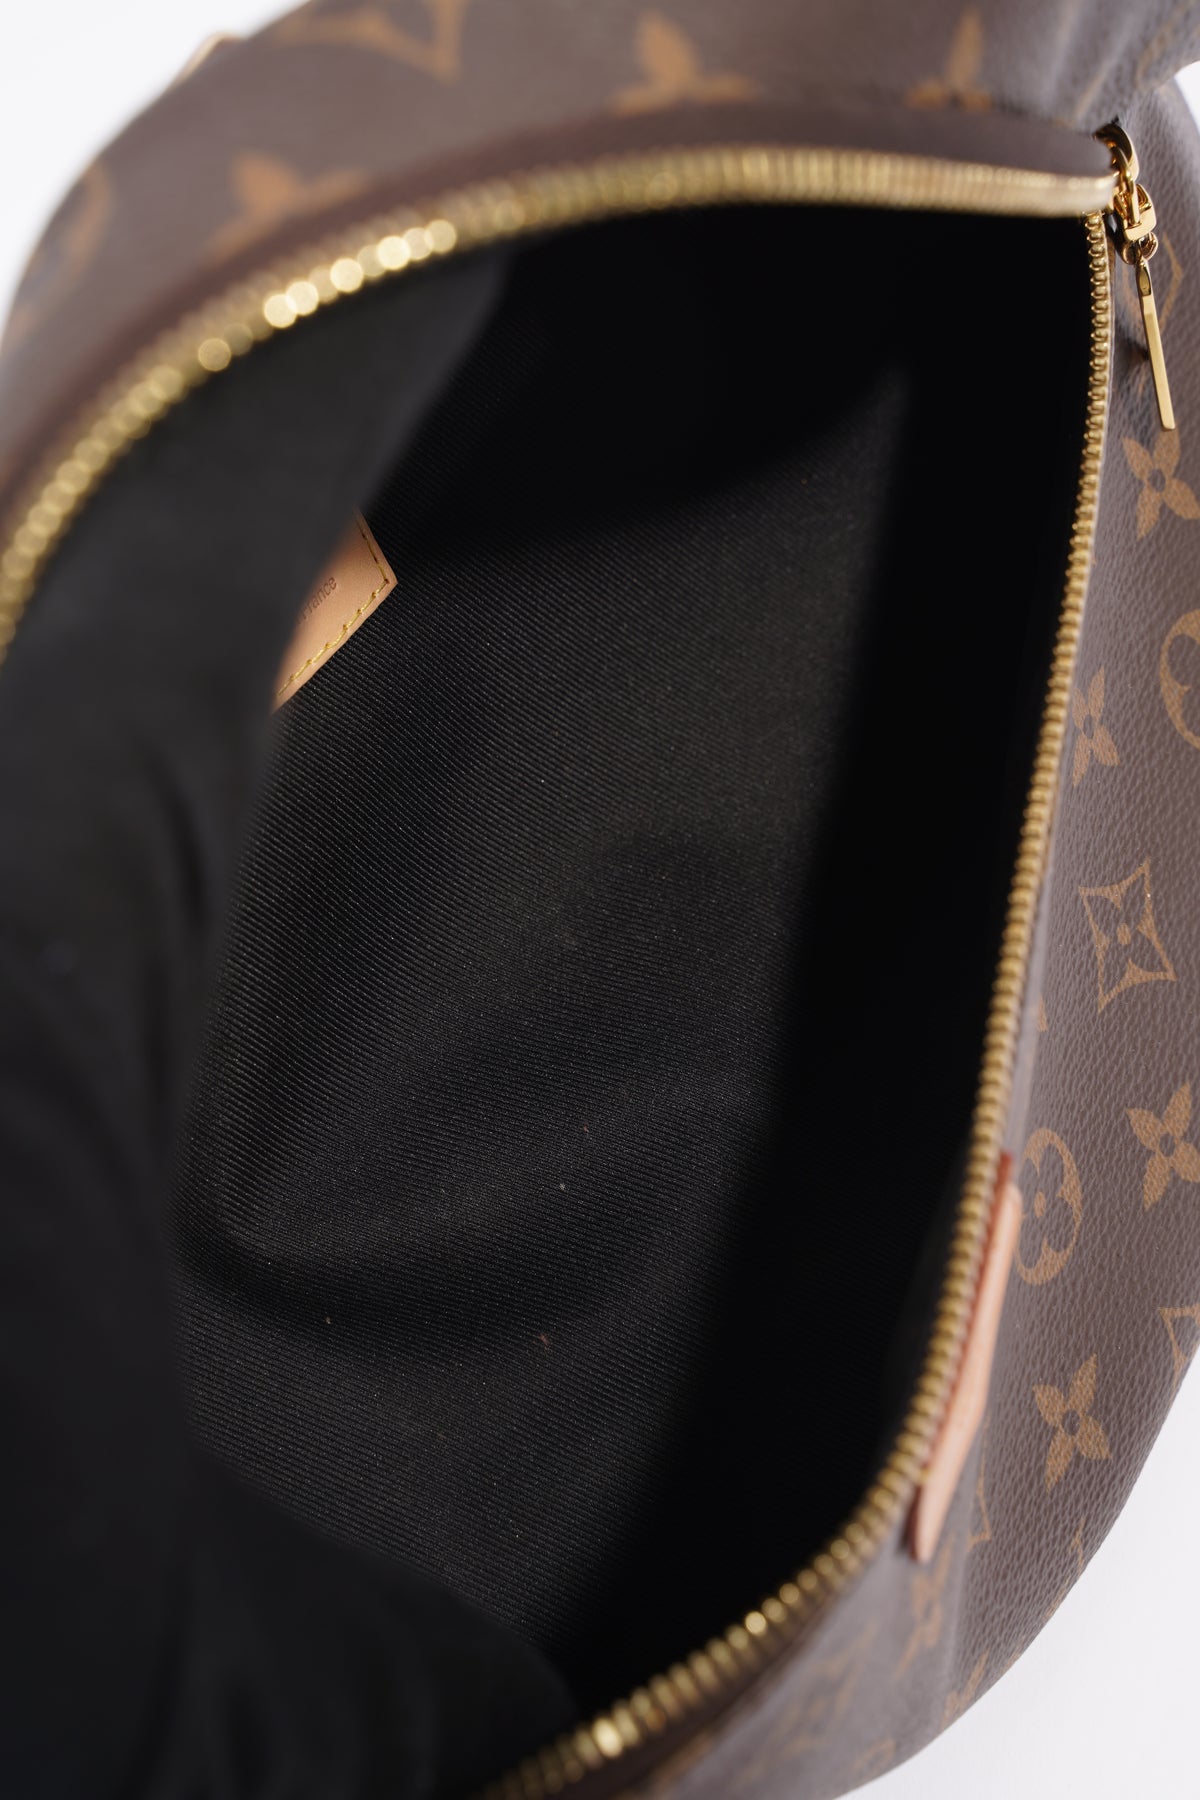 Louis Vuitton Monogram Bumbag – DAC